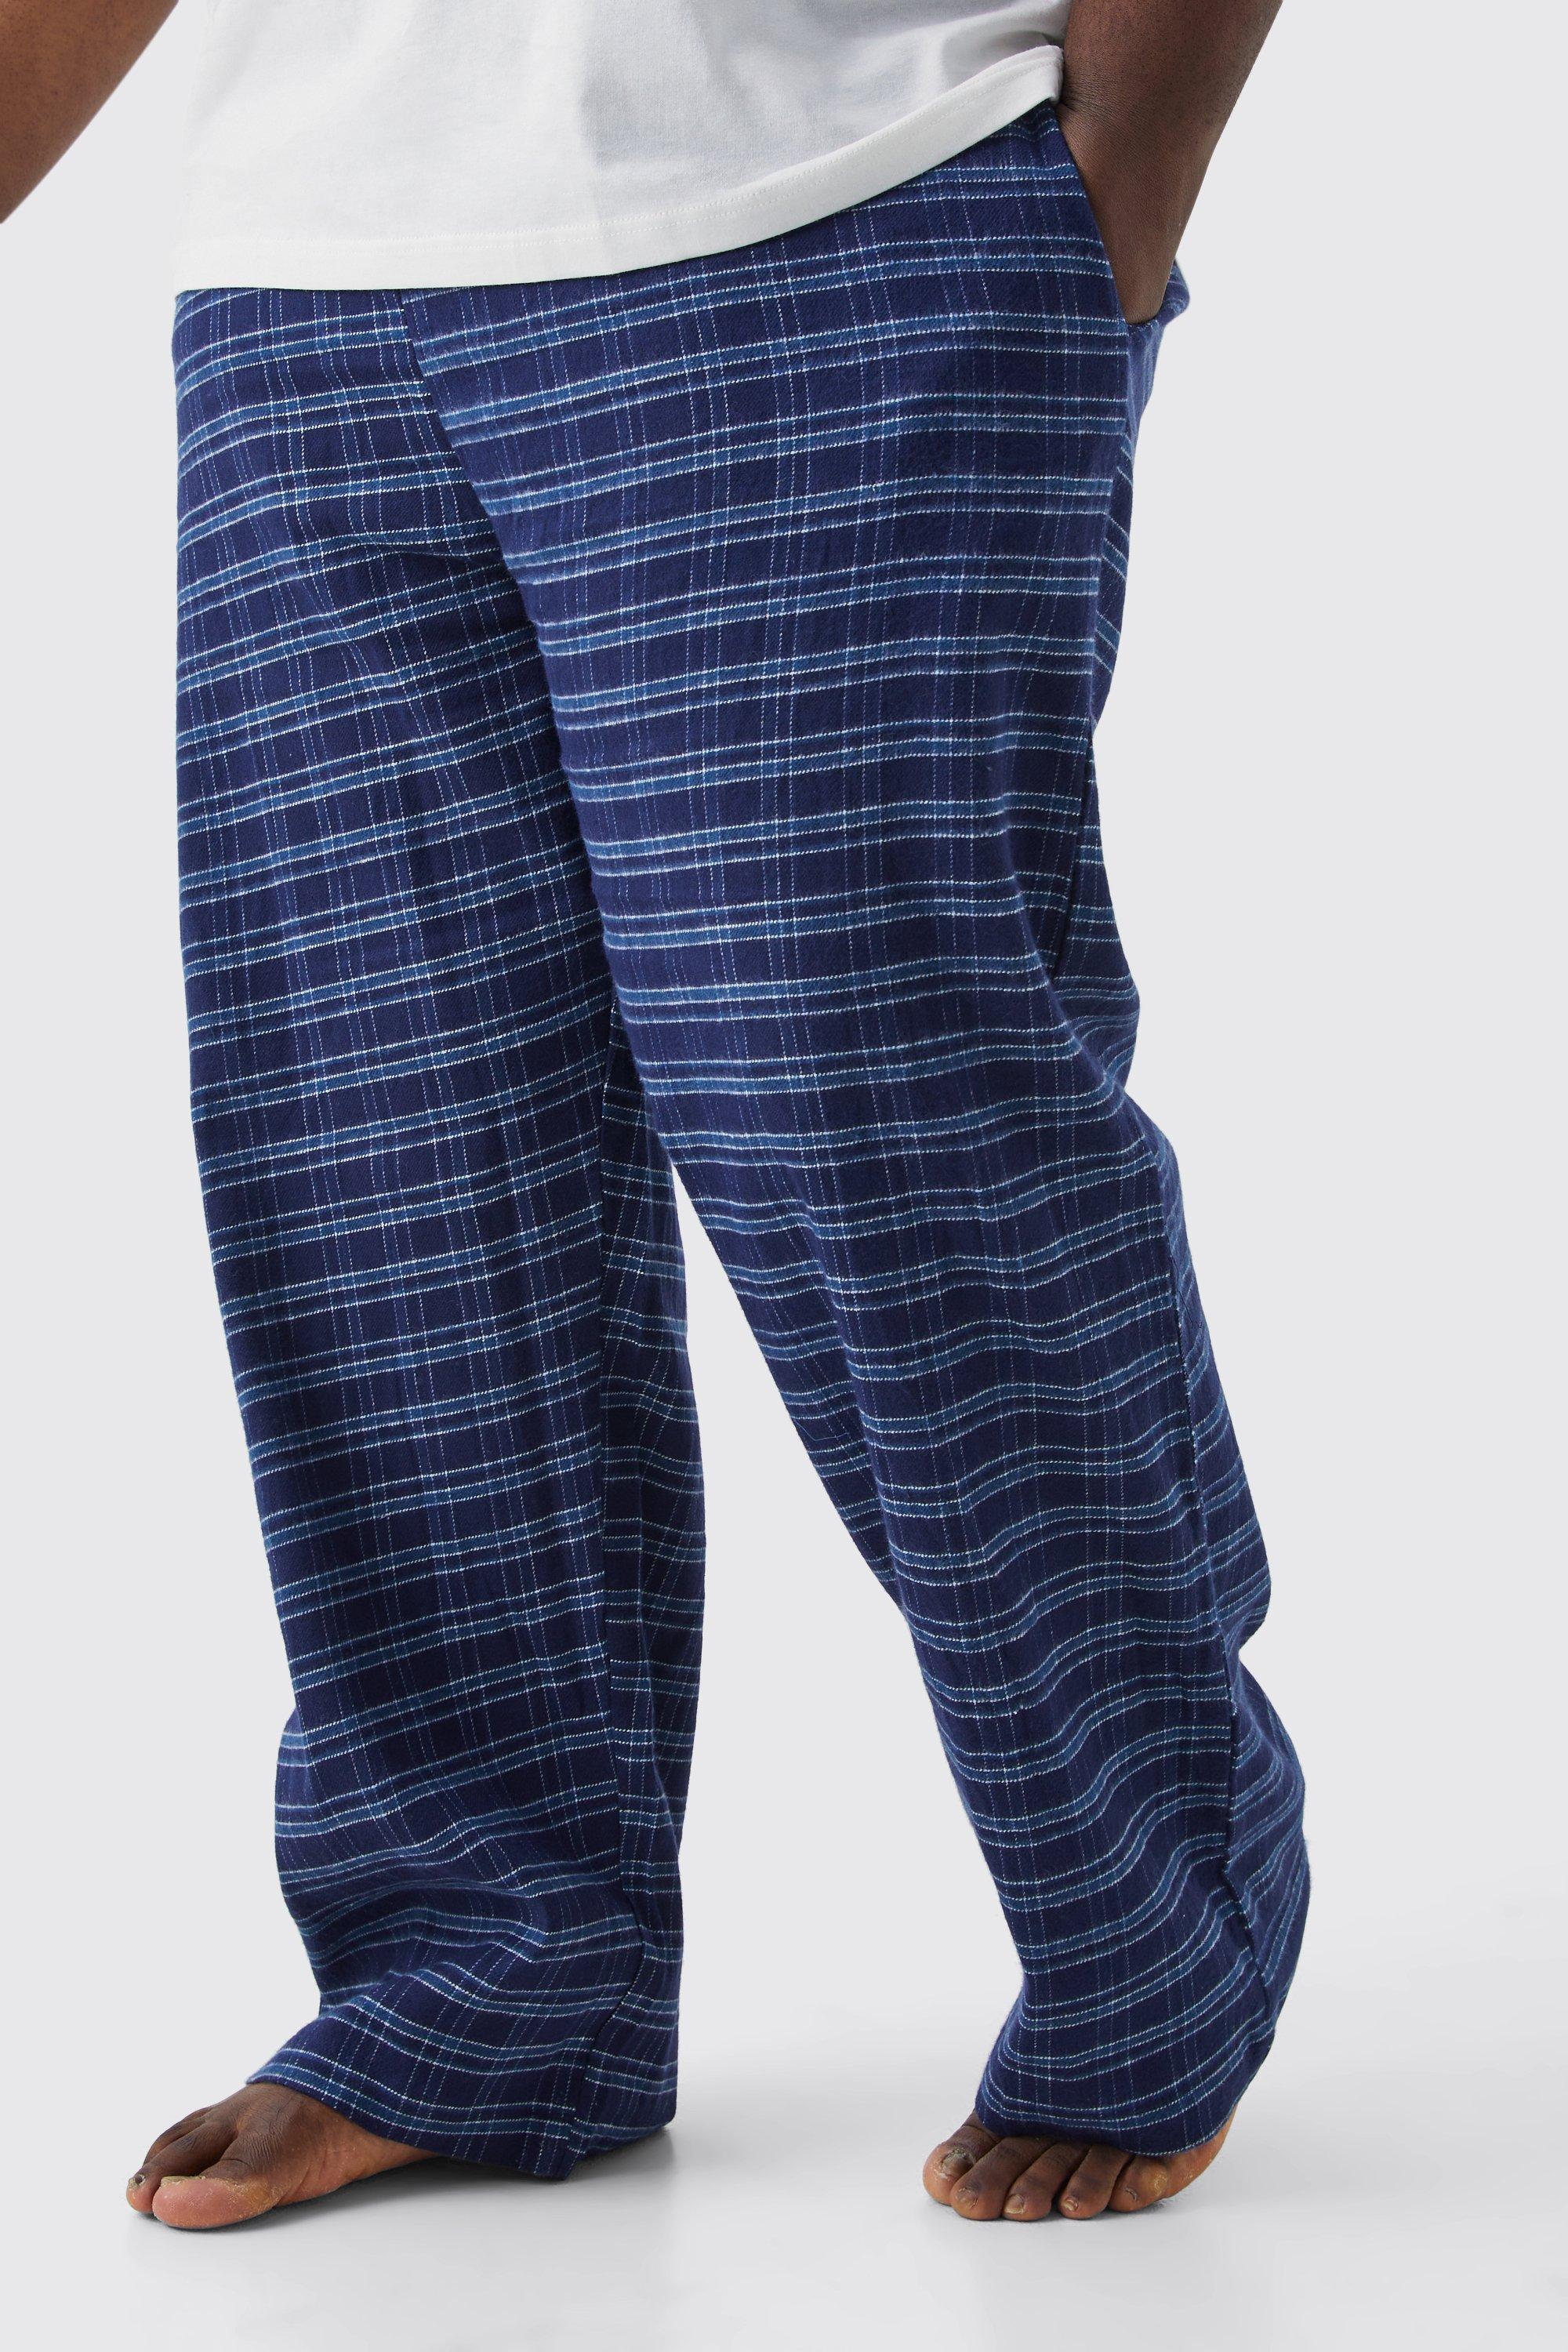 grande taille - pantalon de pyjama à carreaux homme - bleu - xxxxxl, bleu